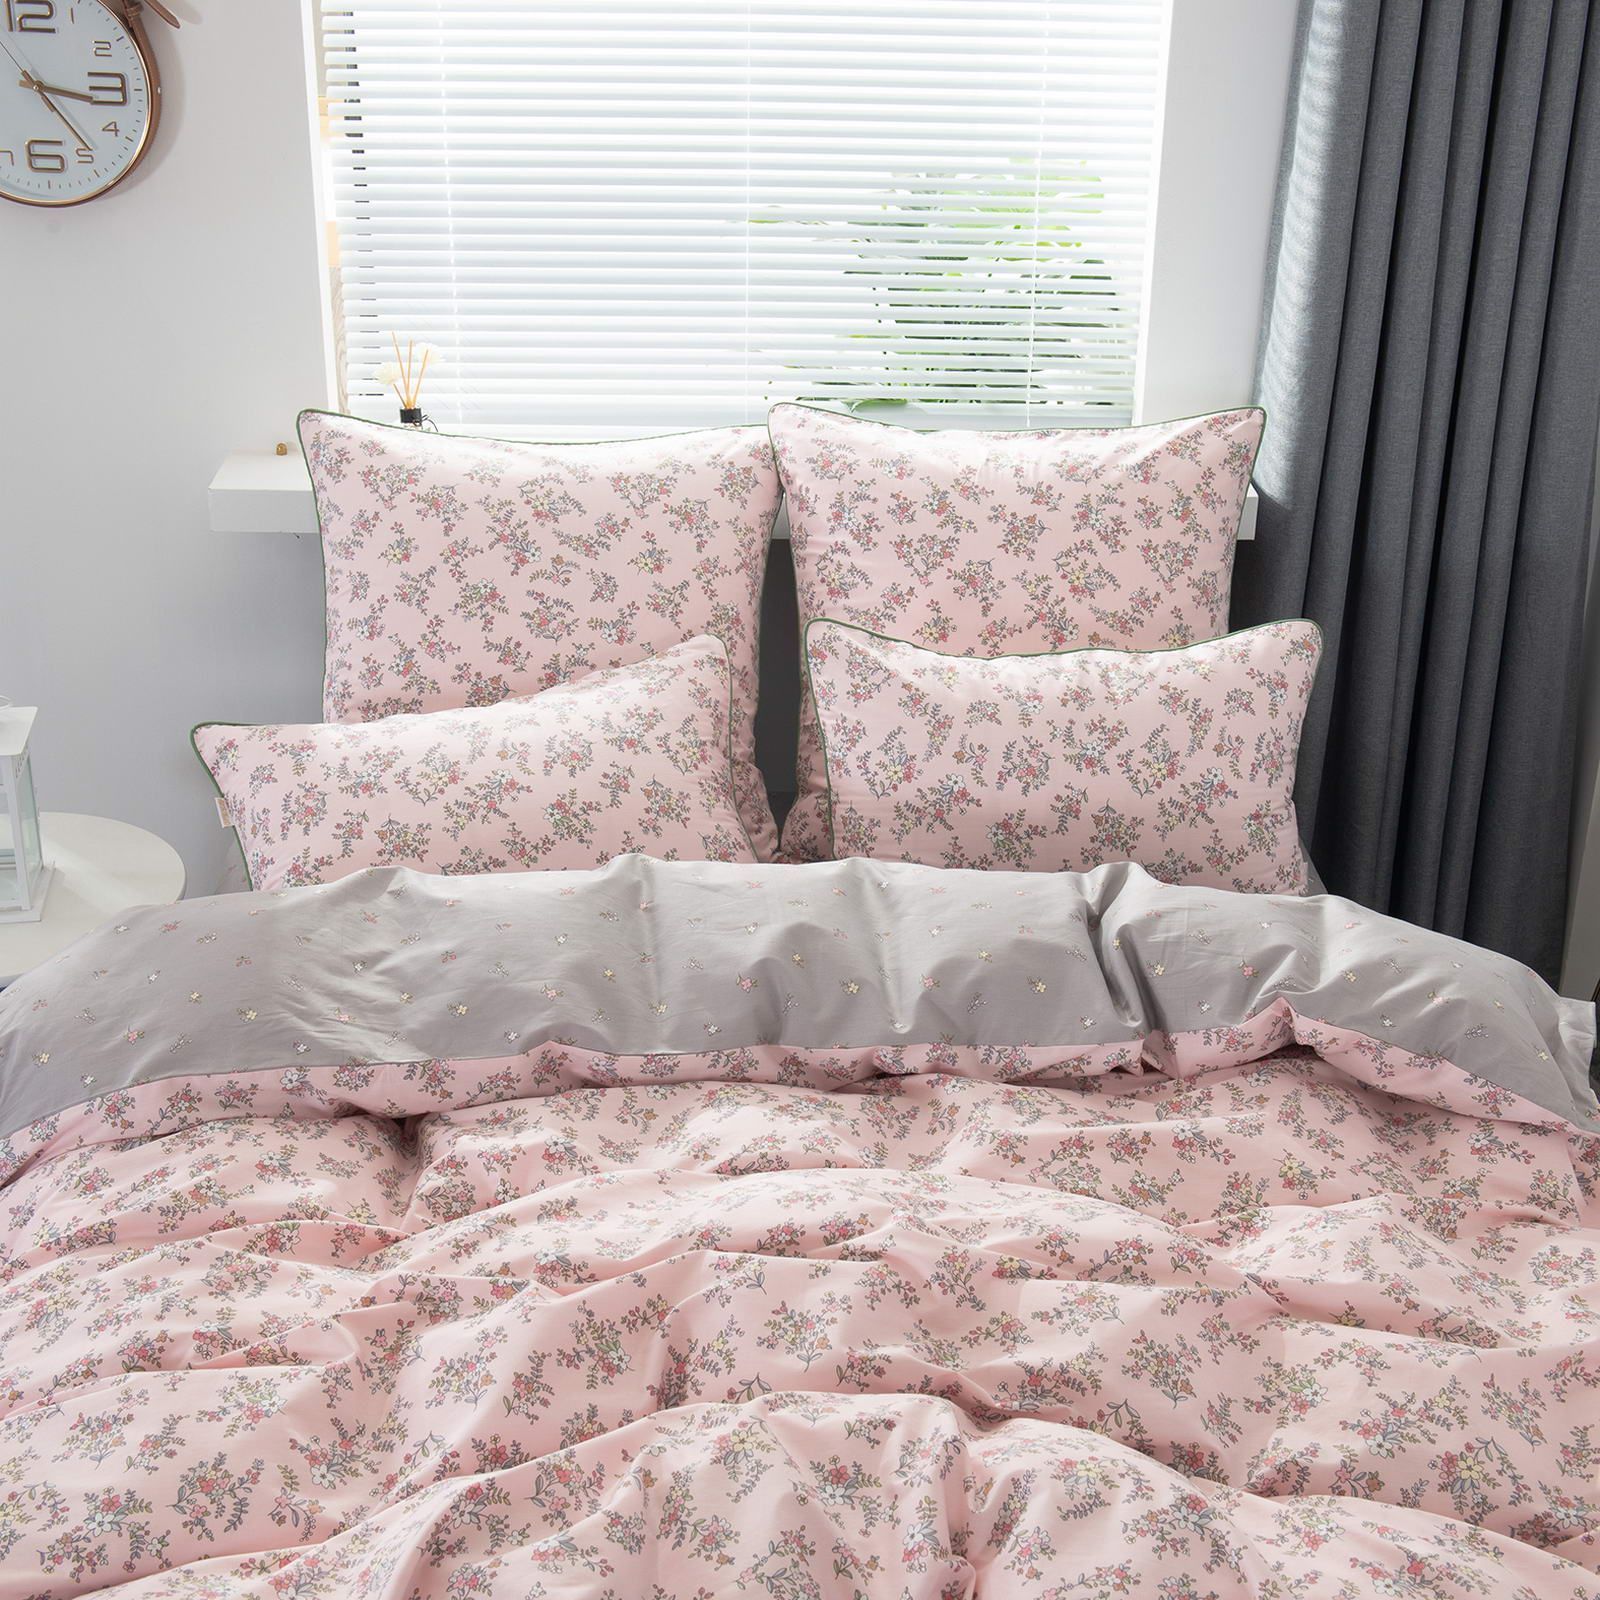 Семейный комплект постельного белья Вивьен (розовая) КПБ сатин 7Е 5209